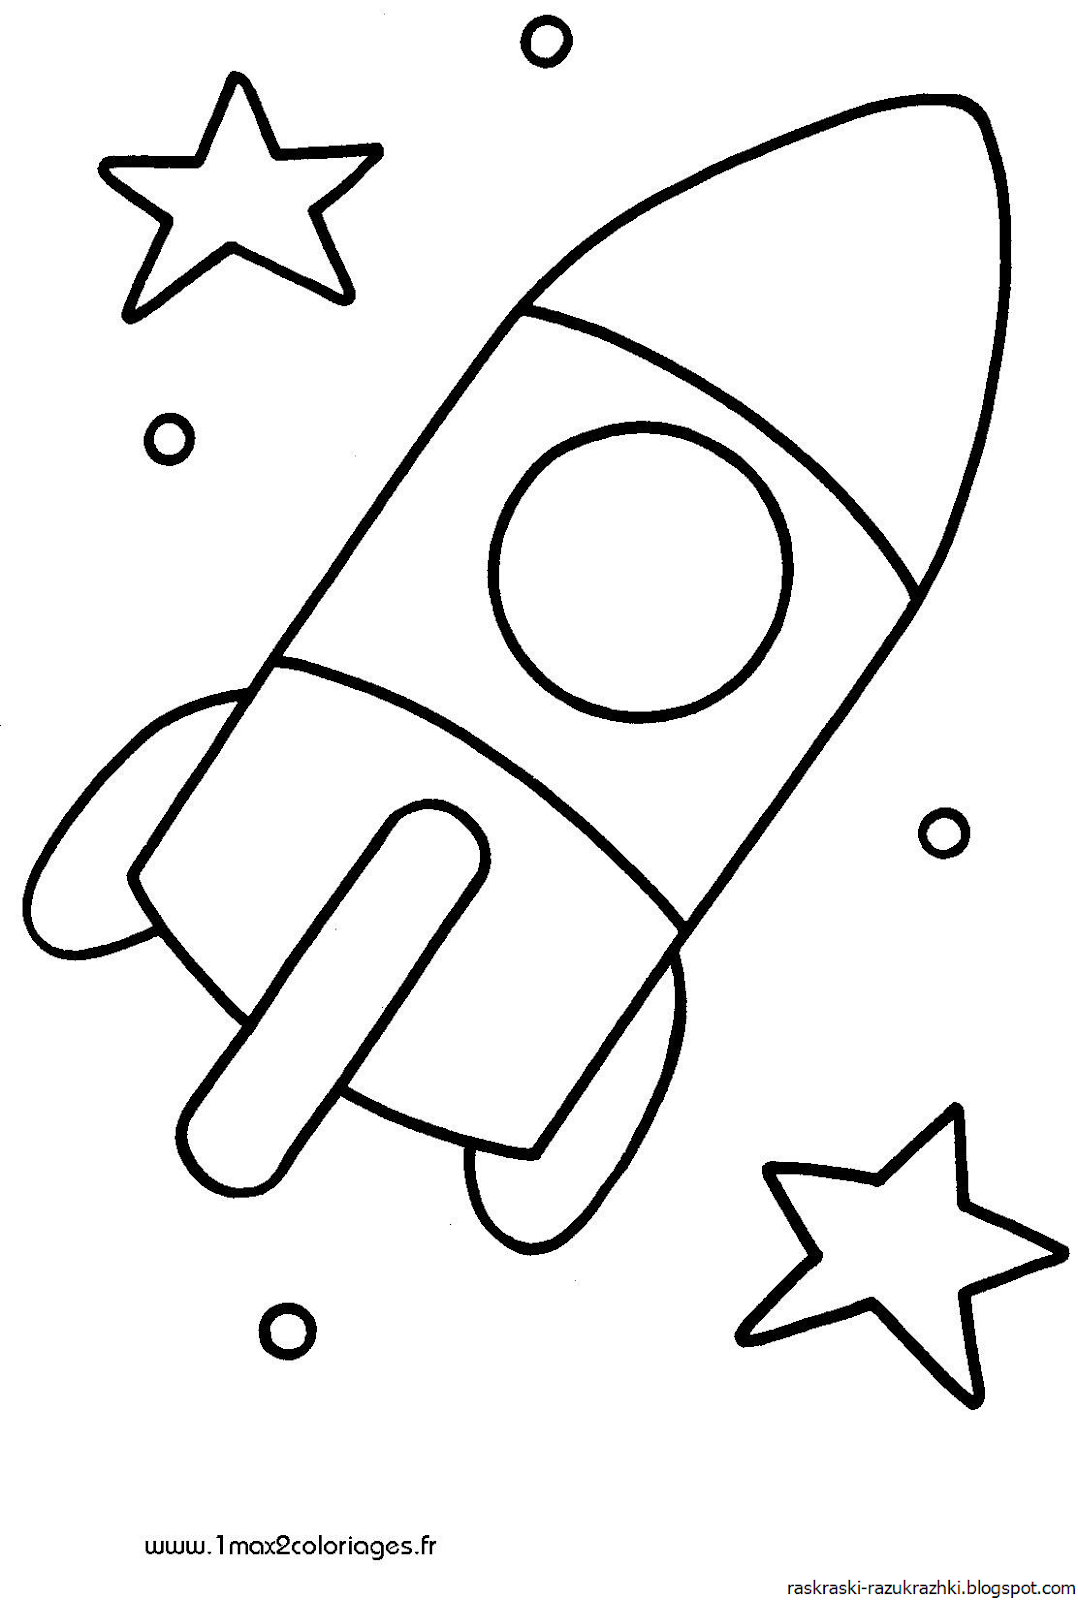 Ракета для детей 2 3 лет. Ракета раскраска. Ракета раскраска для малышей. Раскраски на тему космос для детей 3-4 лет. Раскраска для малышей. Космос.